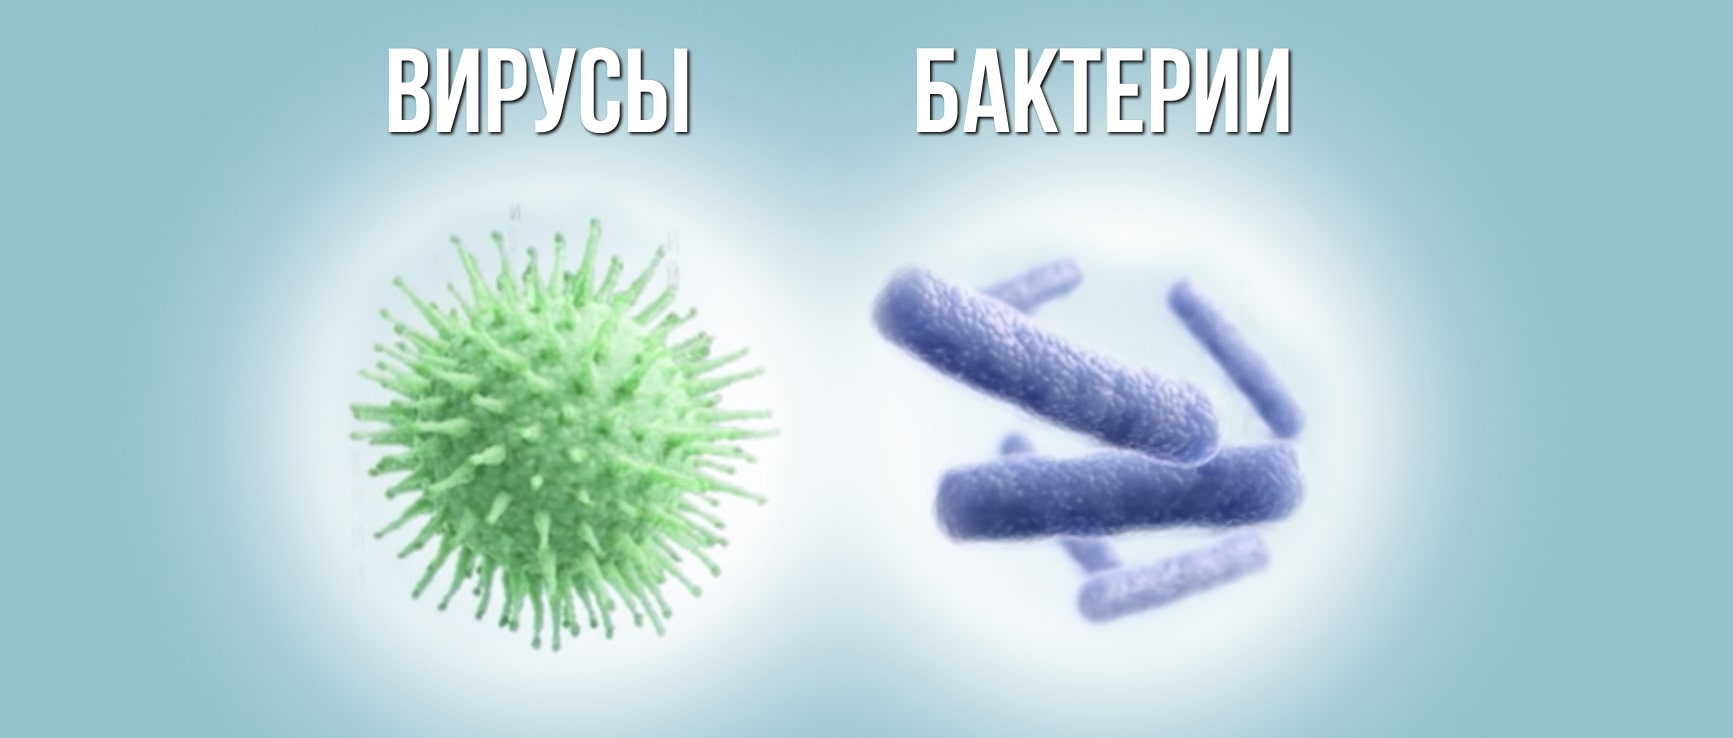 Бактерии и вирусы: как поражают клетки организма, в чем разница и когда нужны антибиотики | saltmag | яндекс дзен